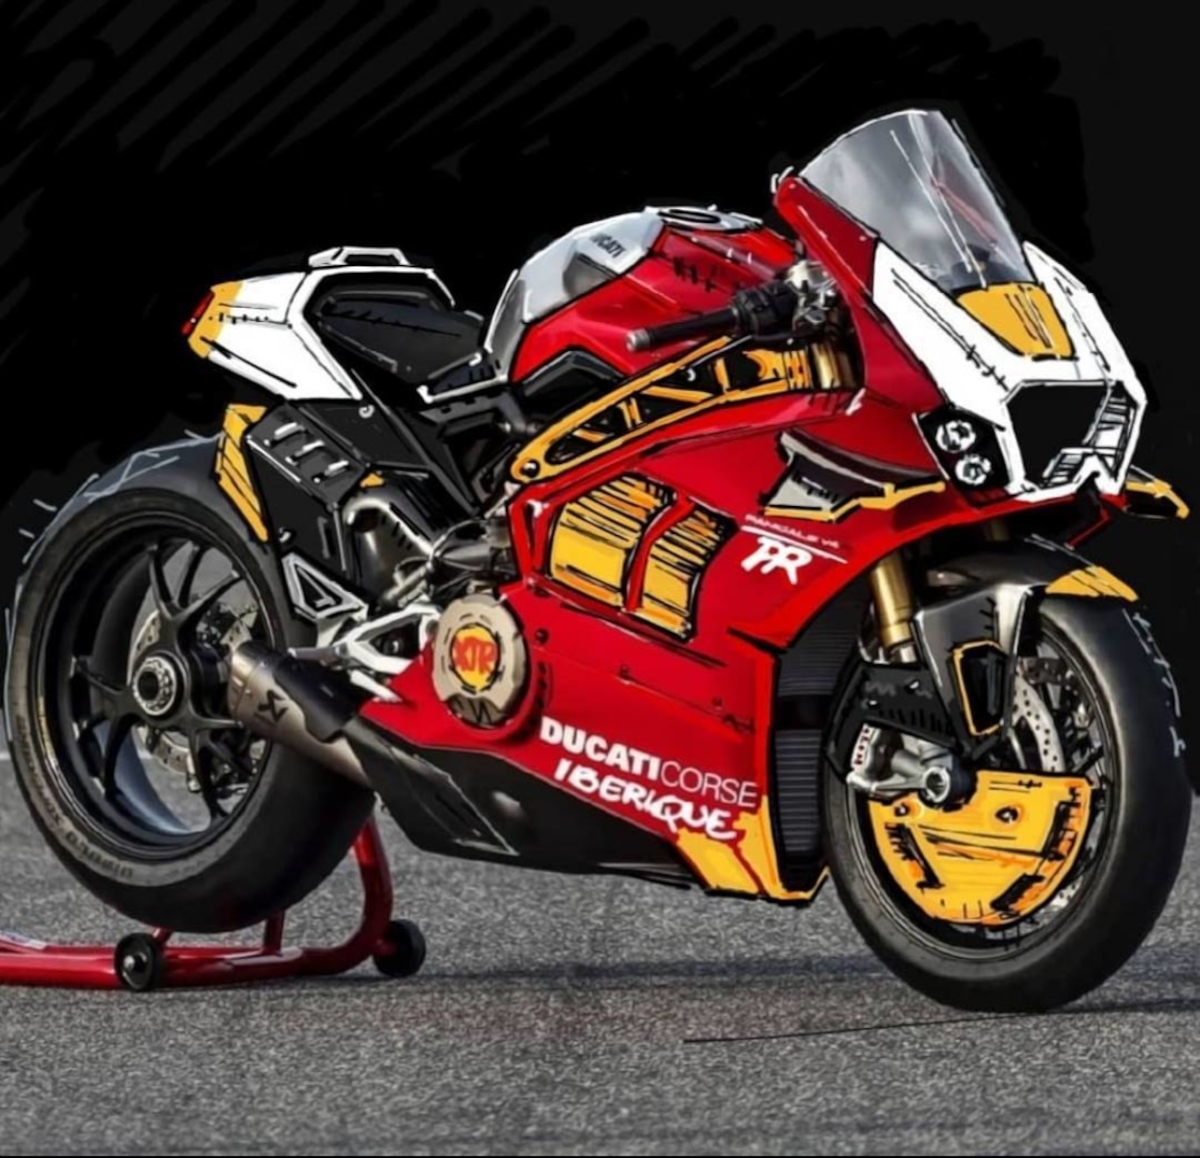 La 'nueva' Ducati Panigale V4 'Iberique'... ¿Se hará realidad?